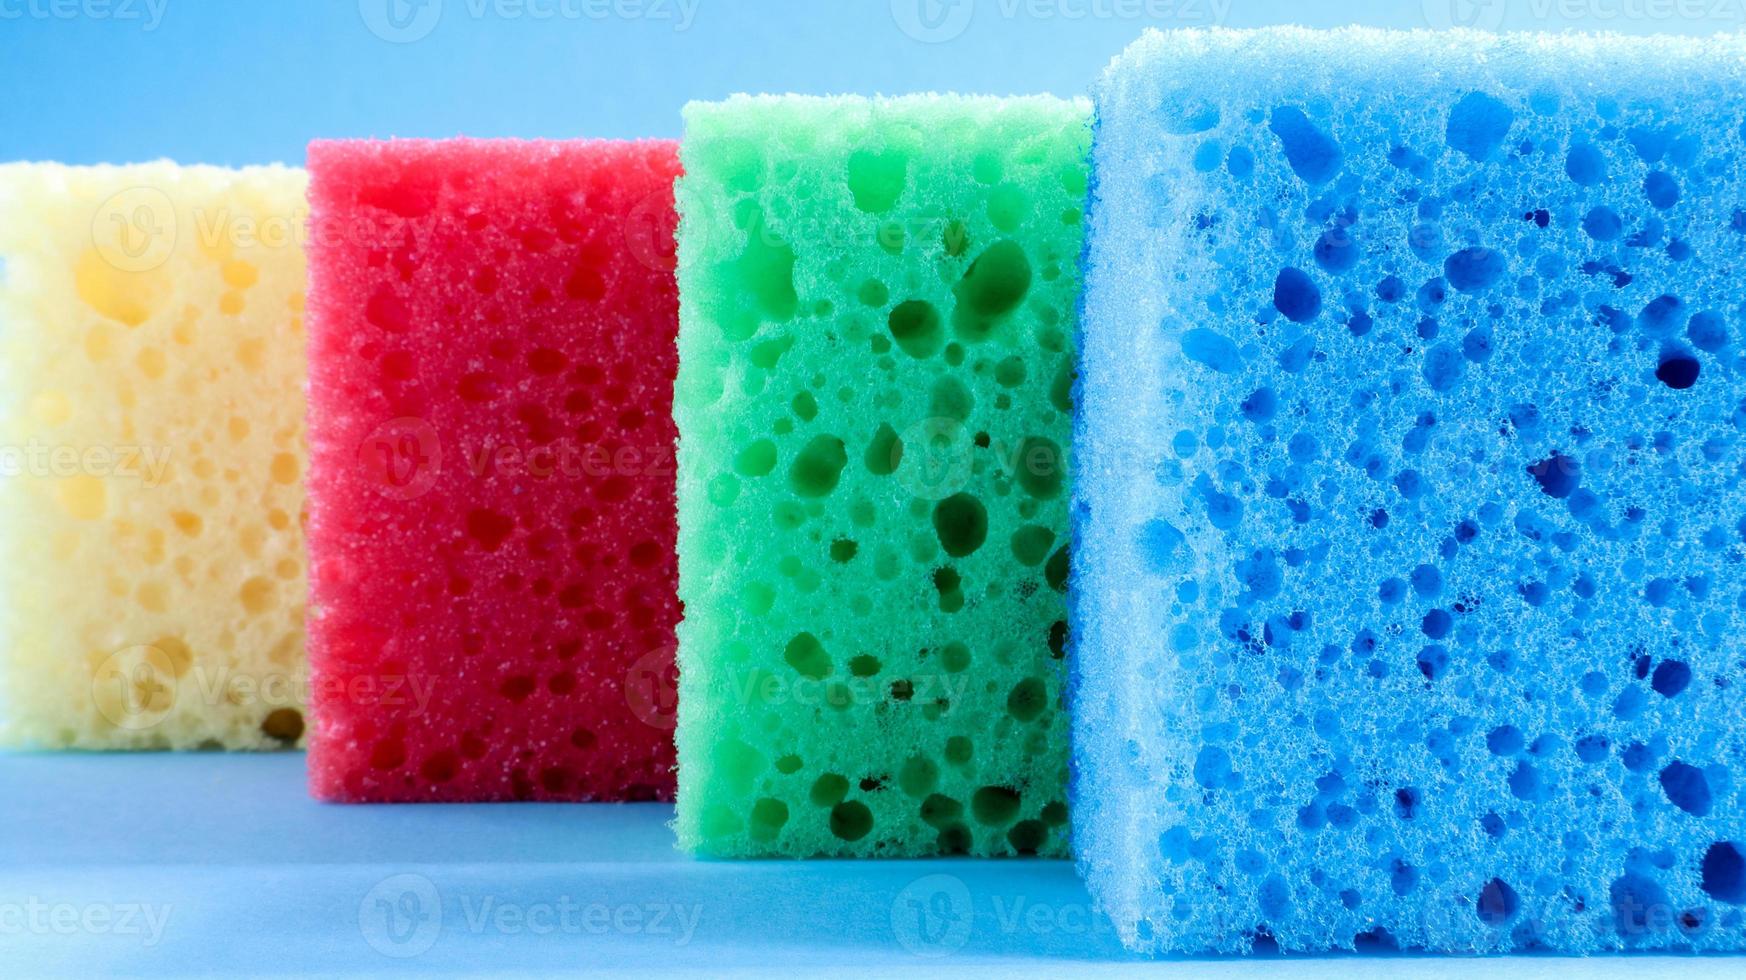 muchas esponjas azules, rojas, amarillas y verdes se usan para lavar y limpiar la suciedad que usan las amas de casa en la vida cotidiana. están hechos de material poroso como la espuma. buena retención de detergente foto